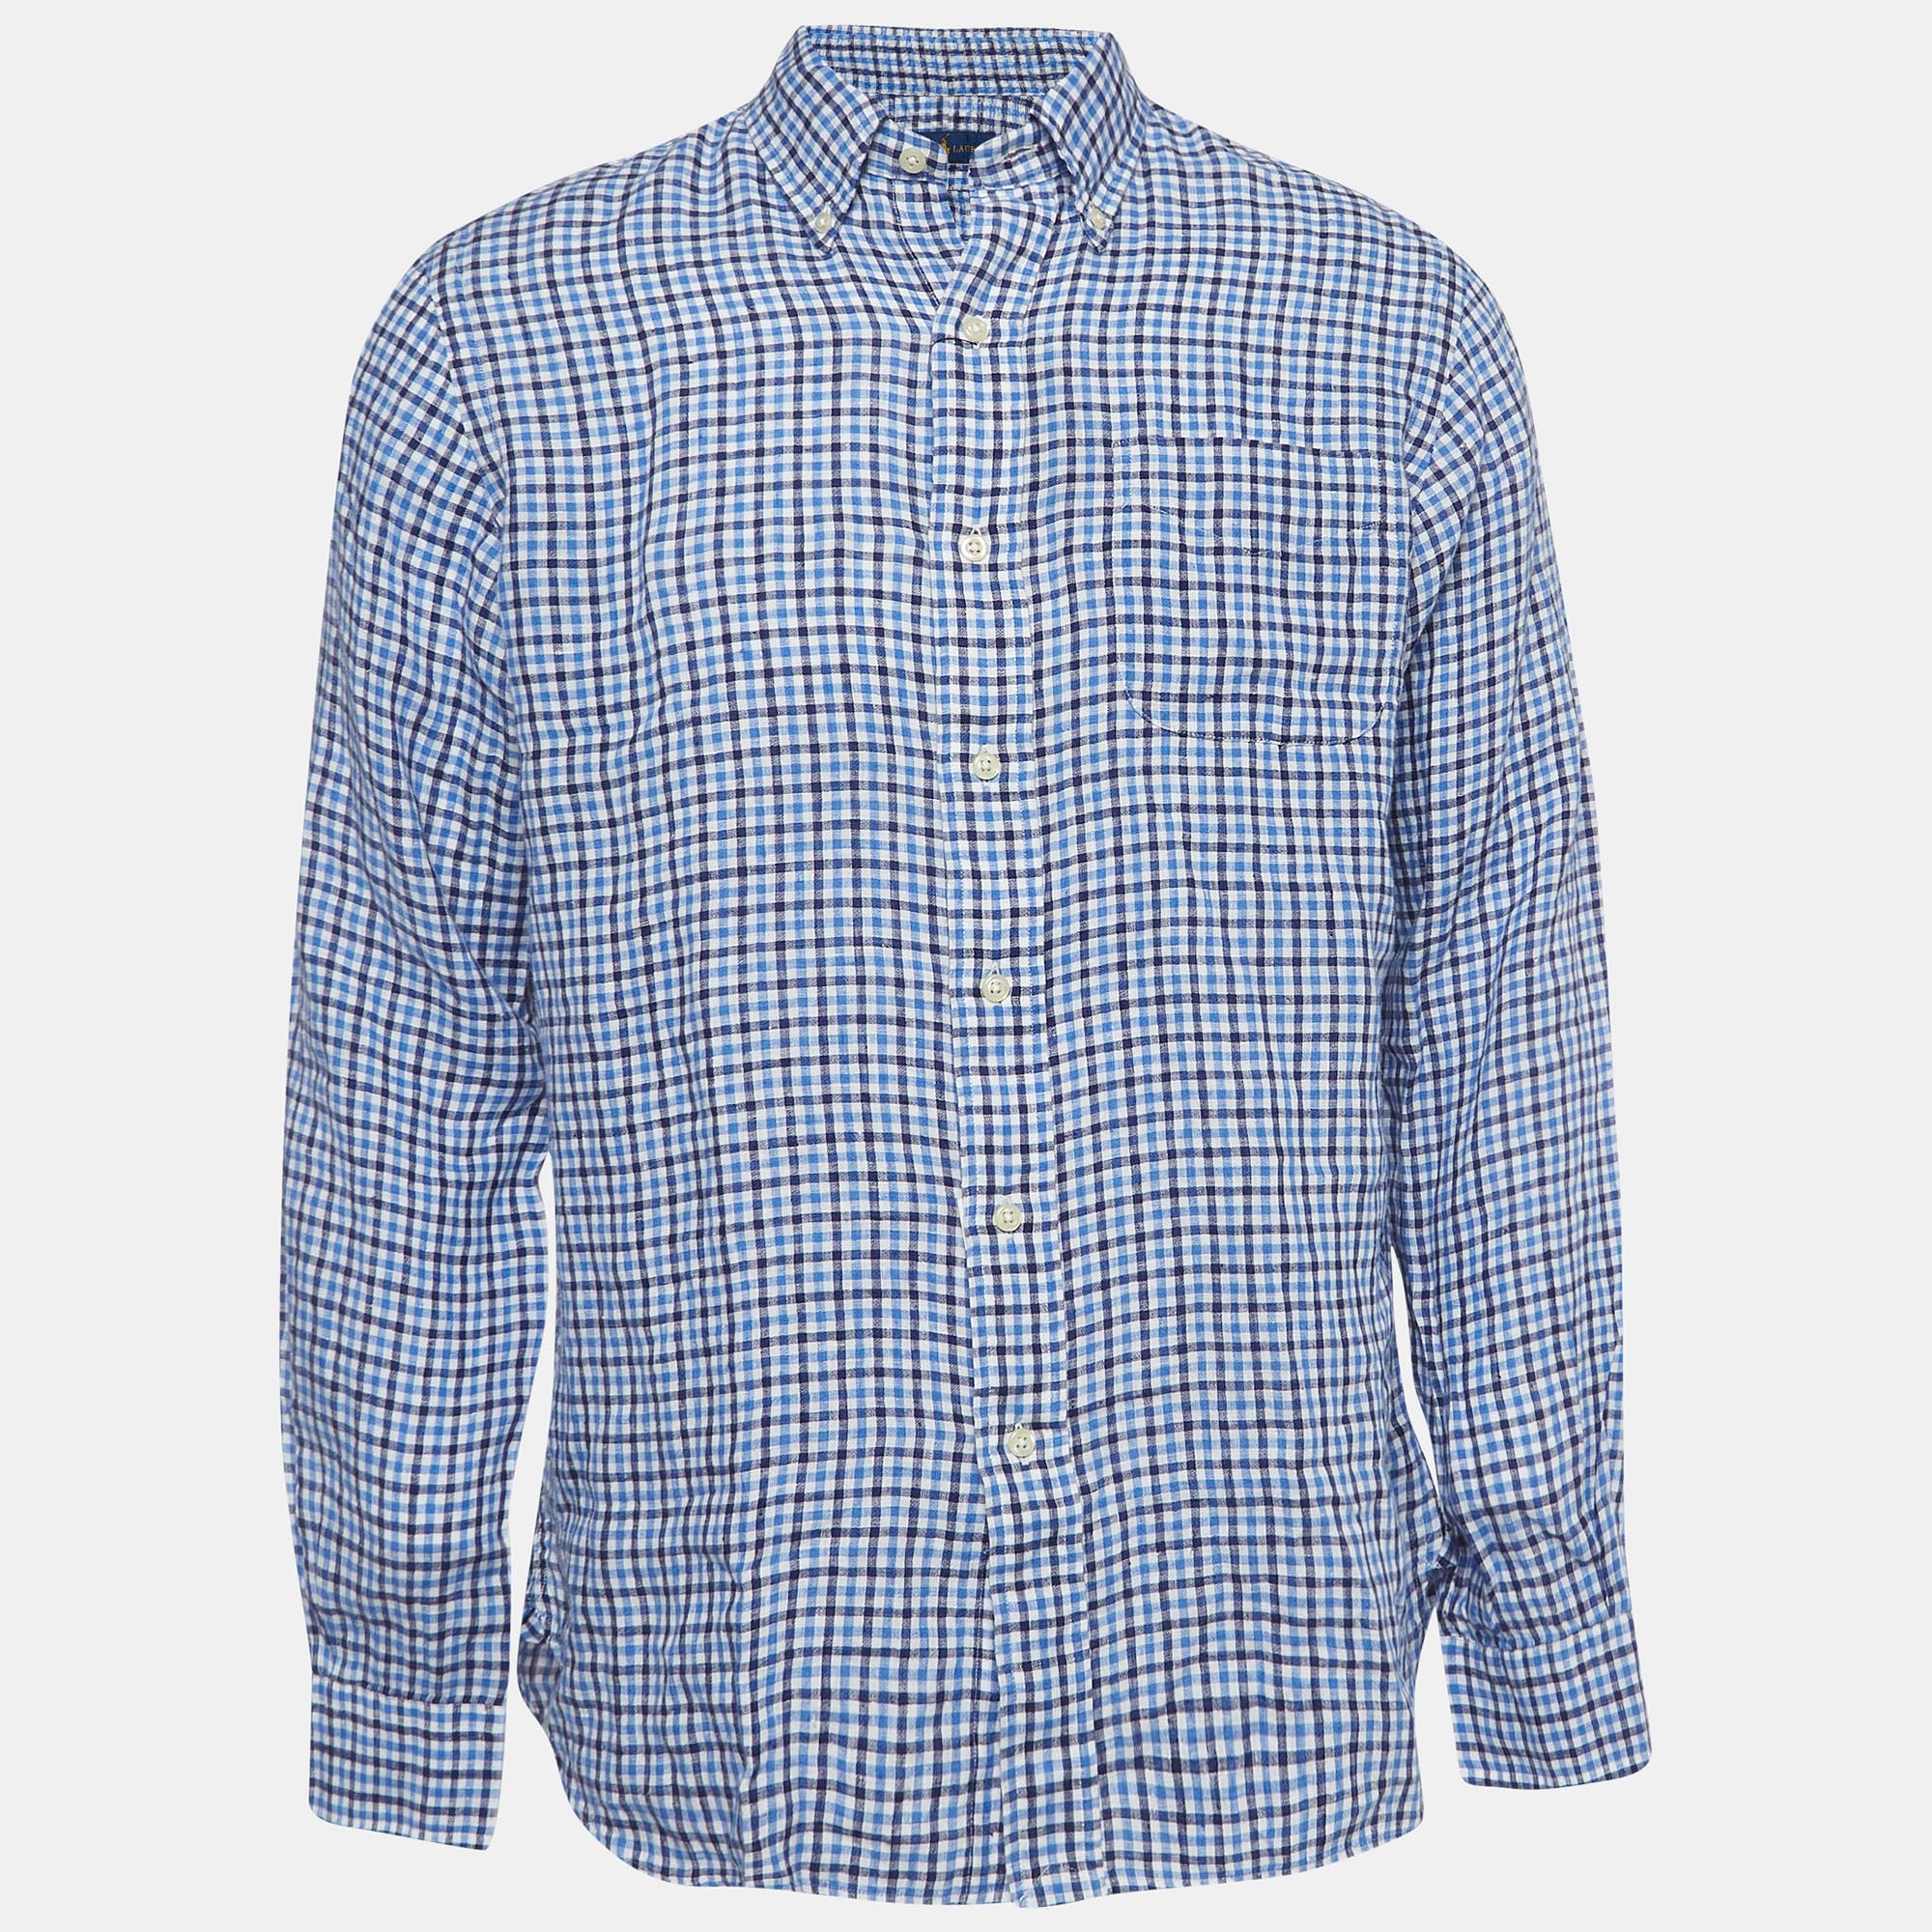 Ralph lauren blue gingham linen button down shirt m